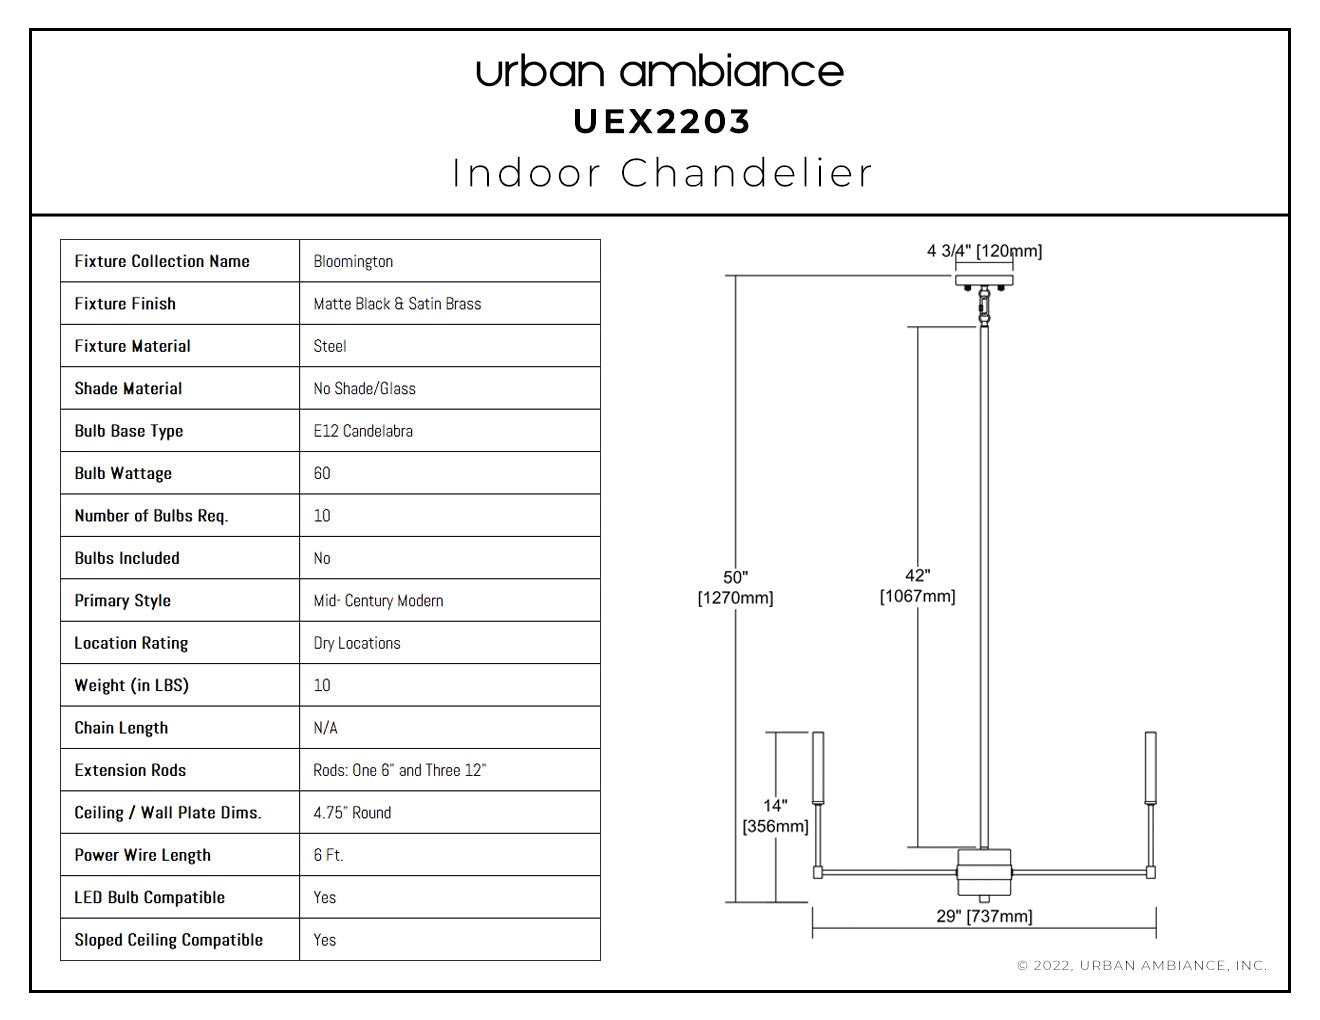 UEX2203 Lux Industrial Chandelier 14''H x 29''W, Matte Black & Satin Brass  Finish, Bloomington Collection